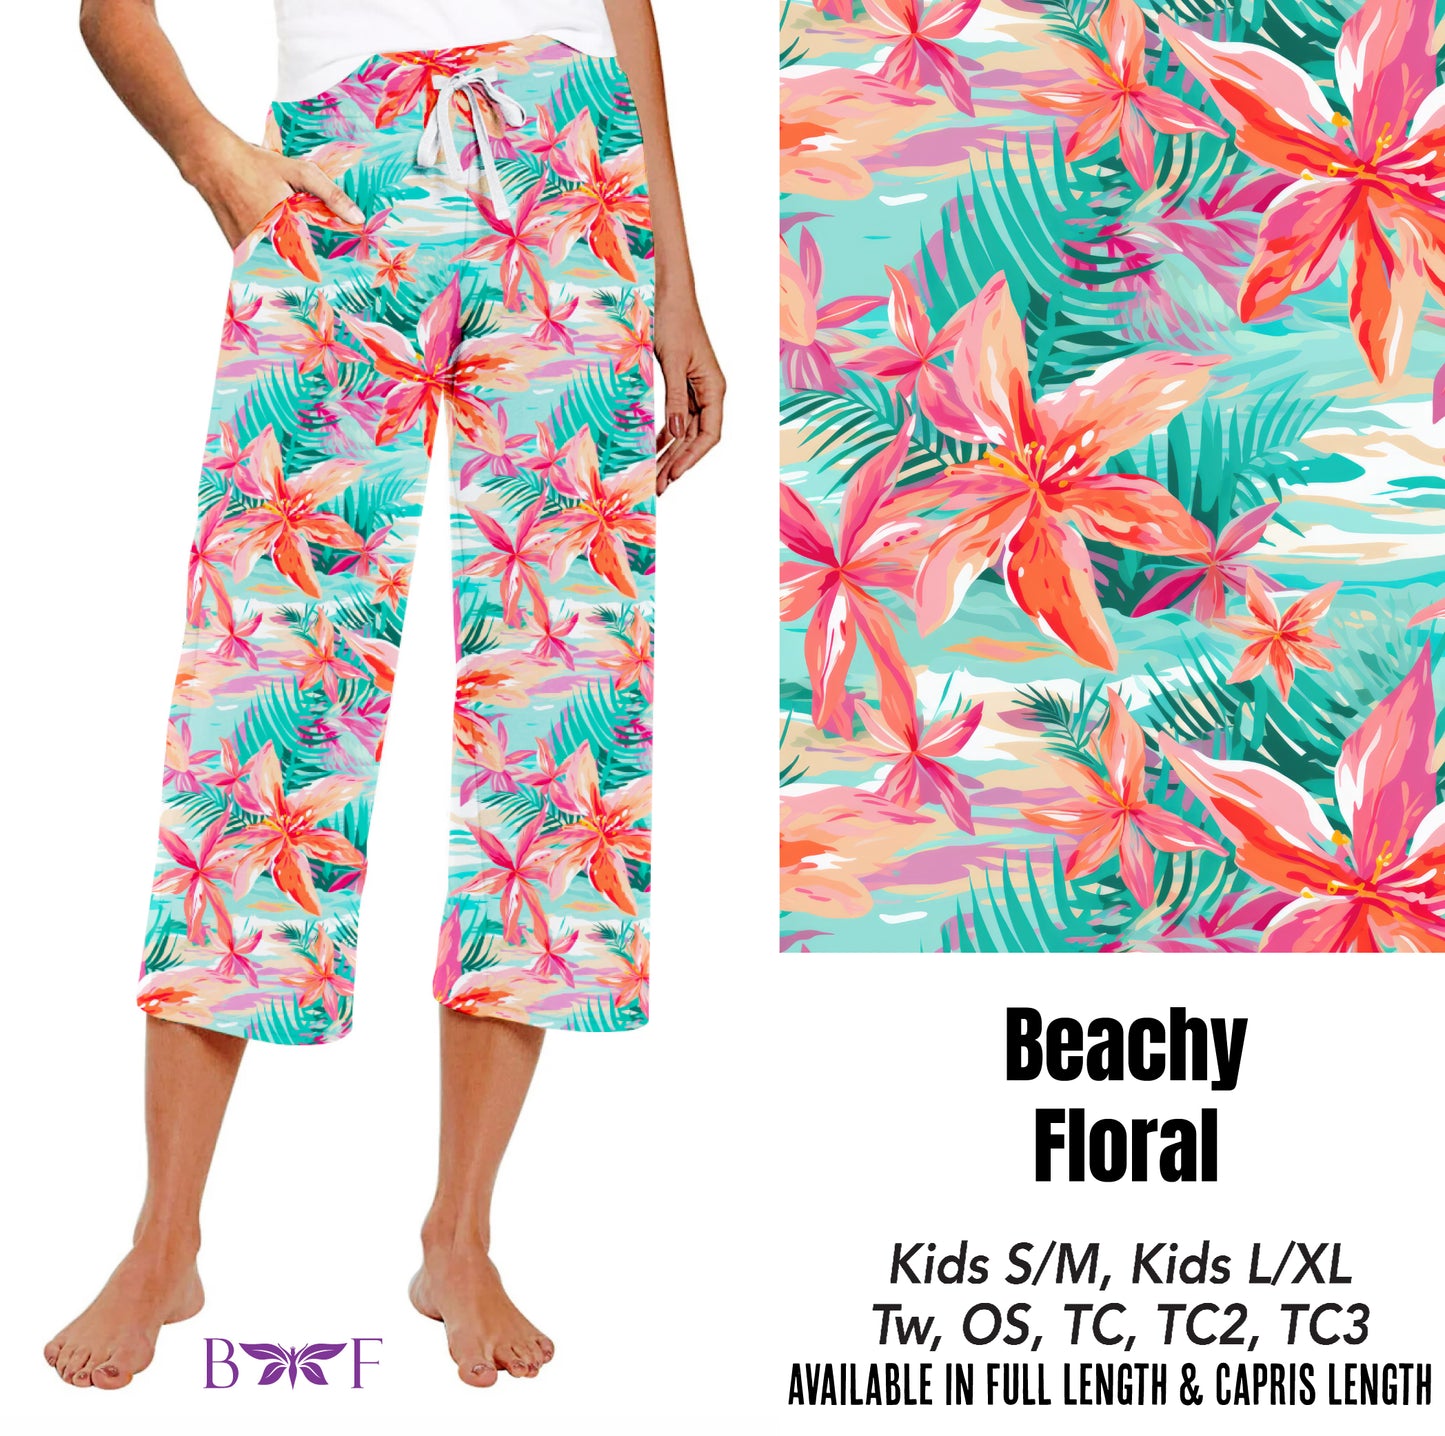 Beachy floral preorder#0515